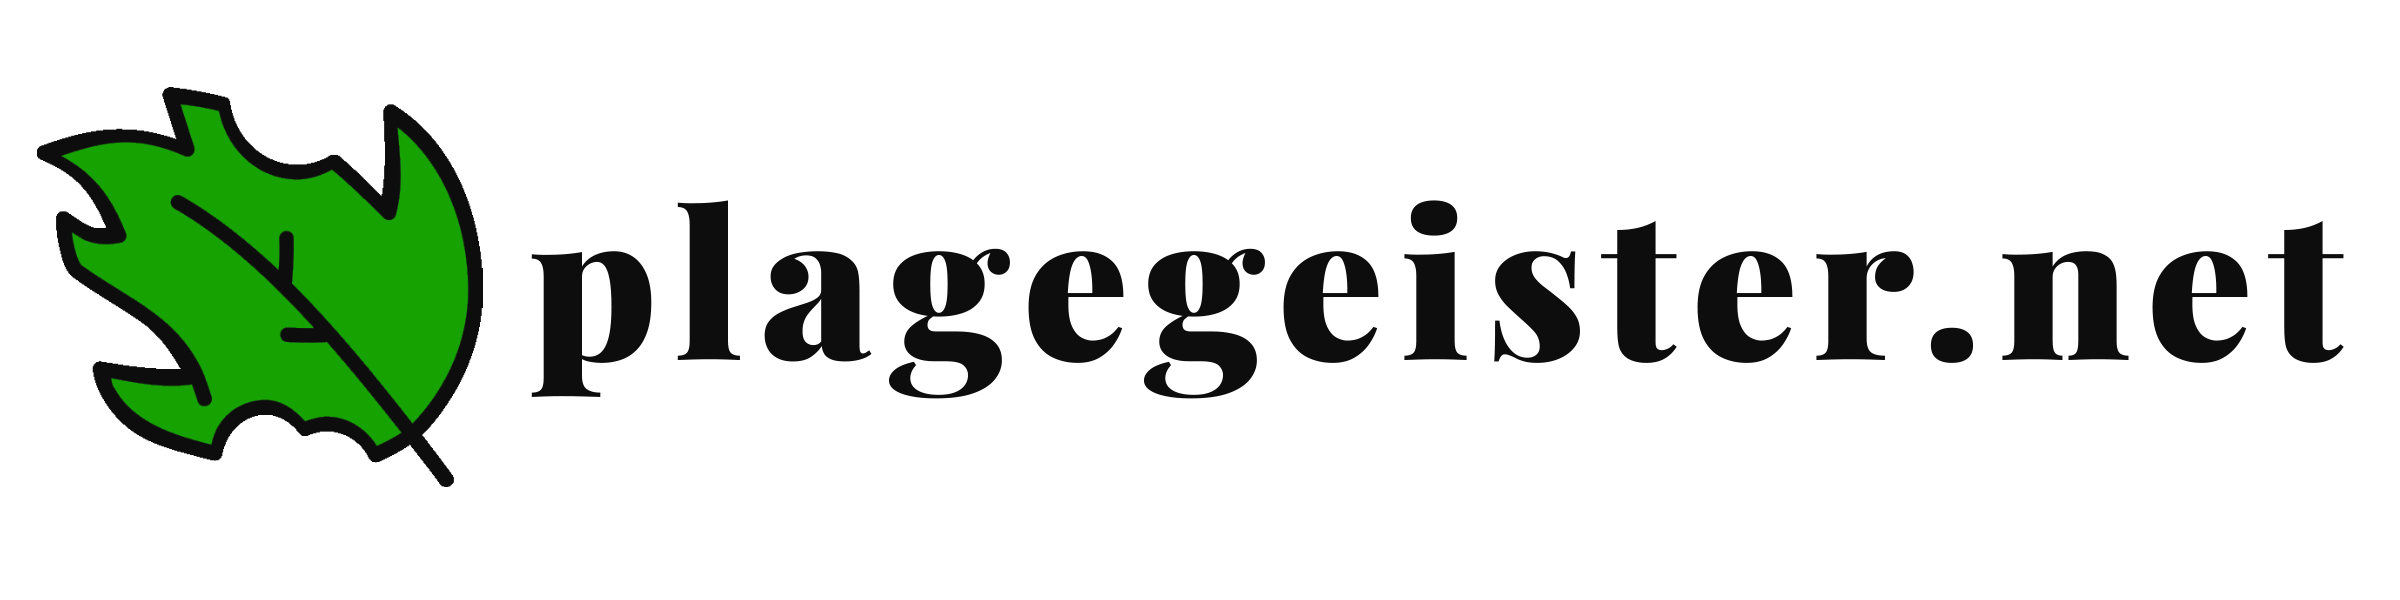 Plagegeister logo